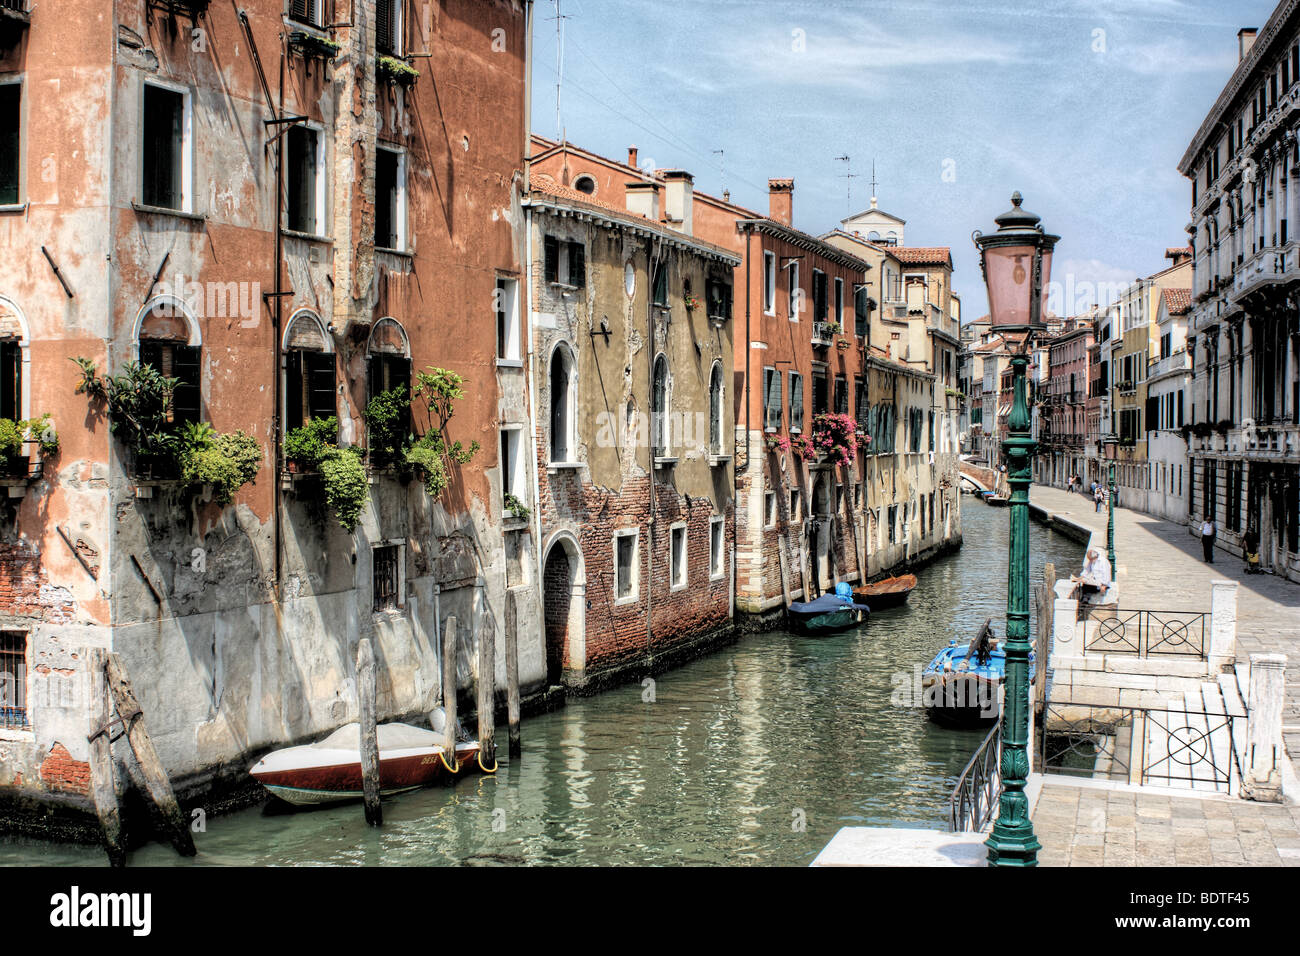 Rio della Misericordia, Cannaregio district of Venice, Italy (HDR - high dynamic range image) Stock Photo